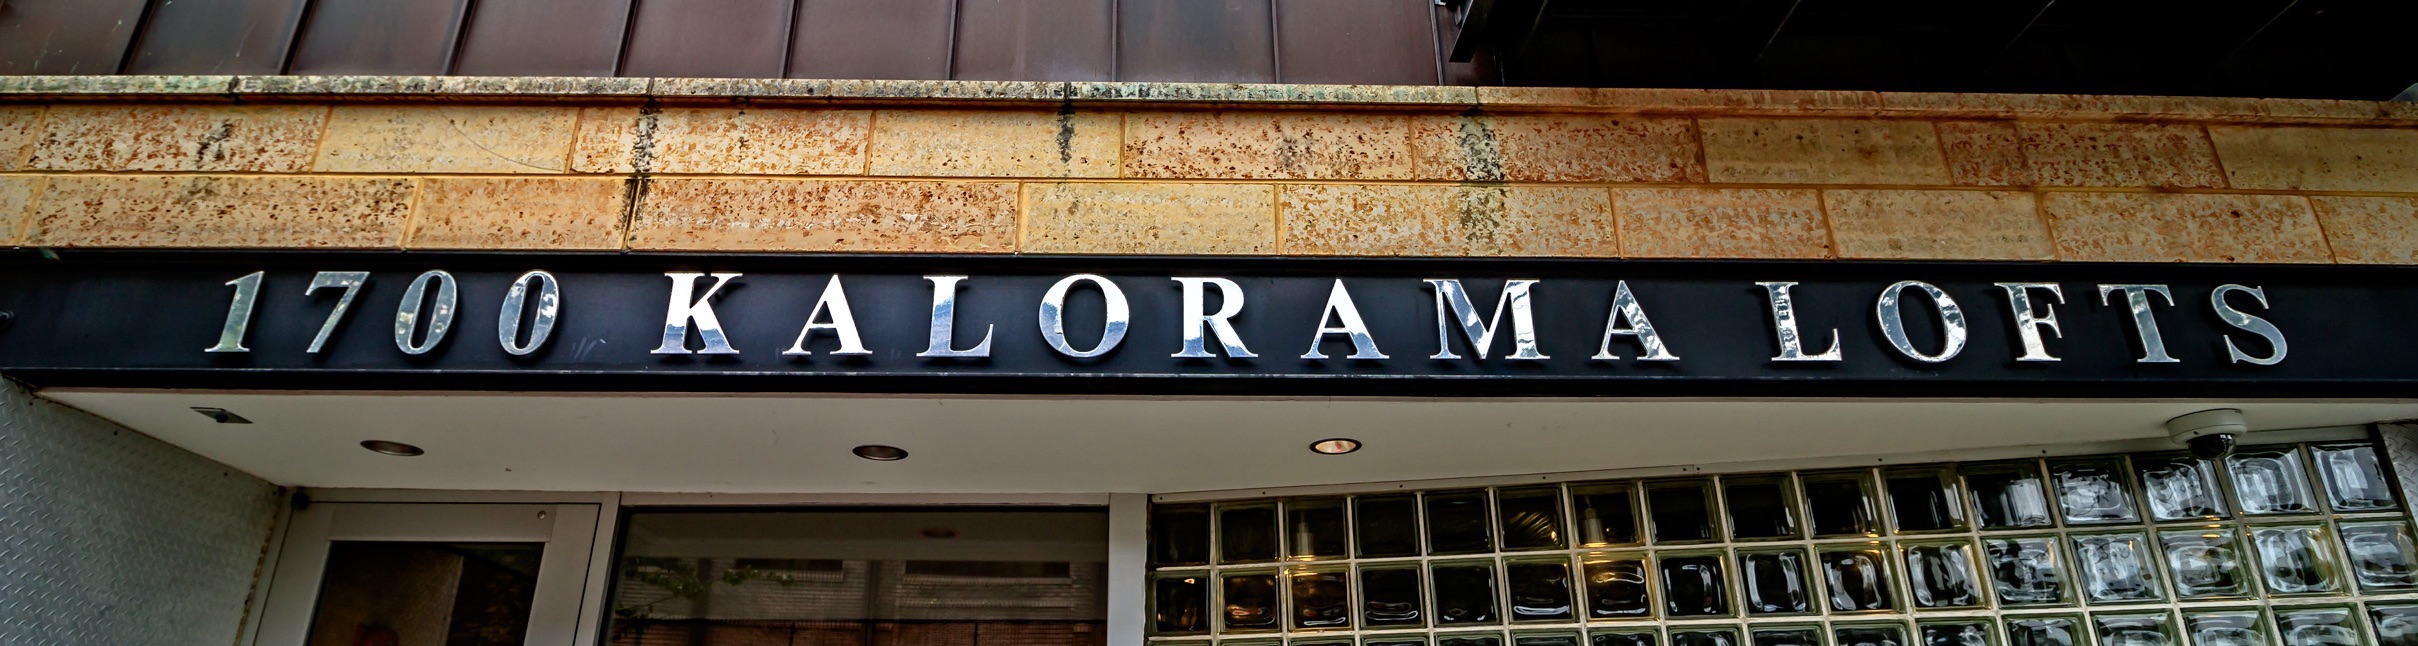 Kalorama Lofts for sale in Washington DC